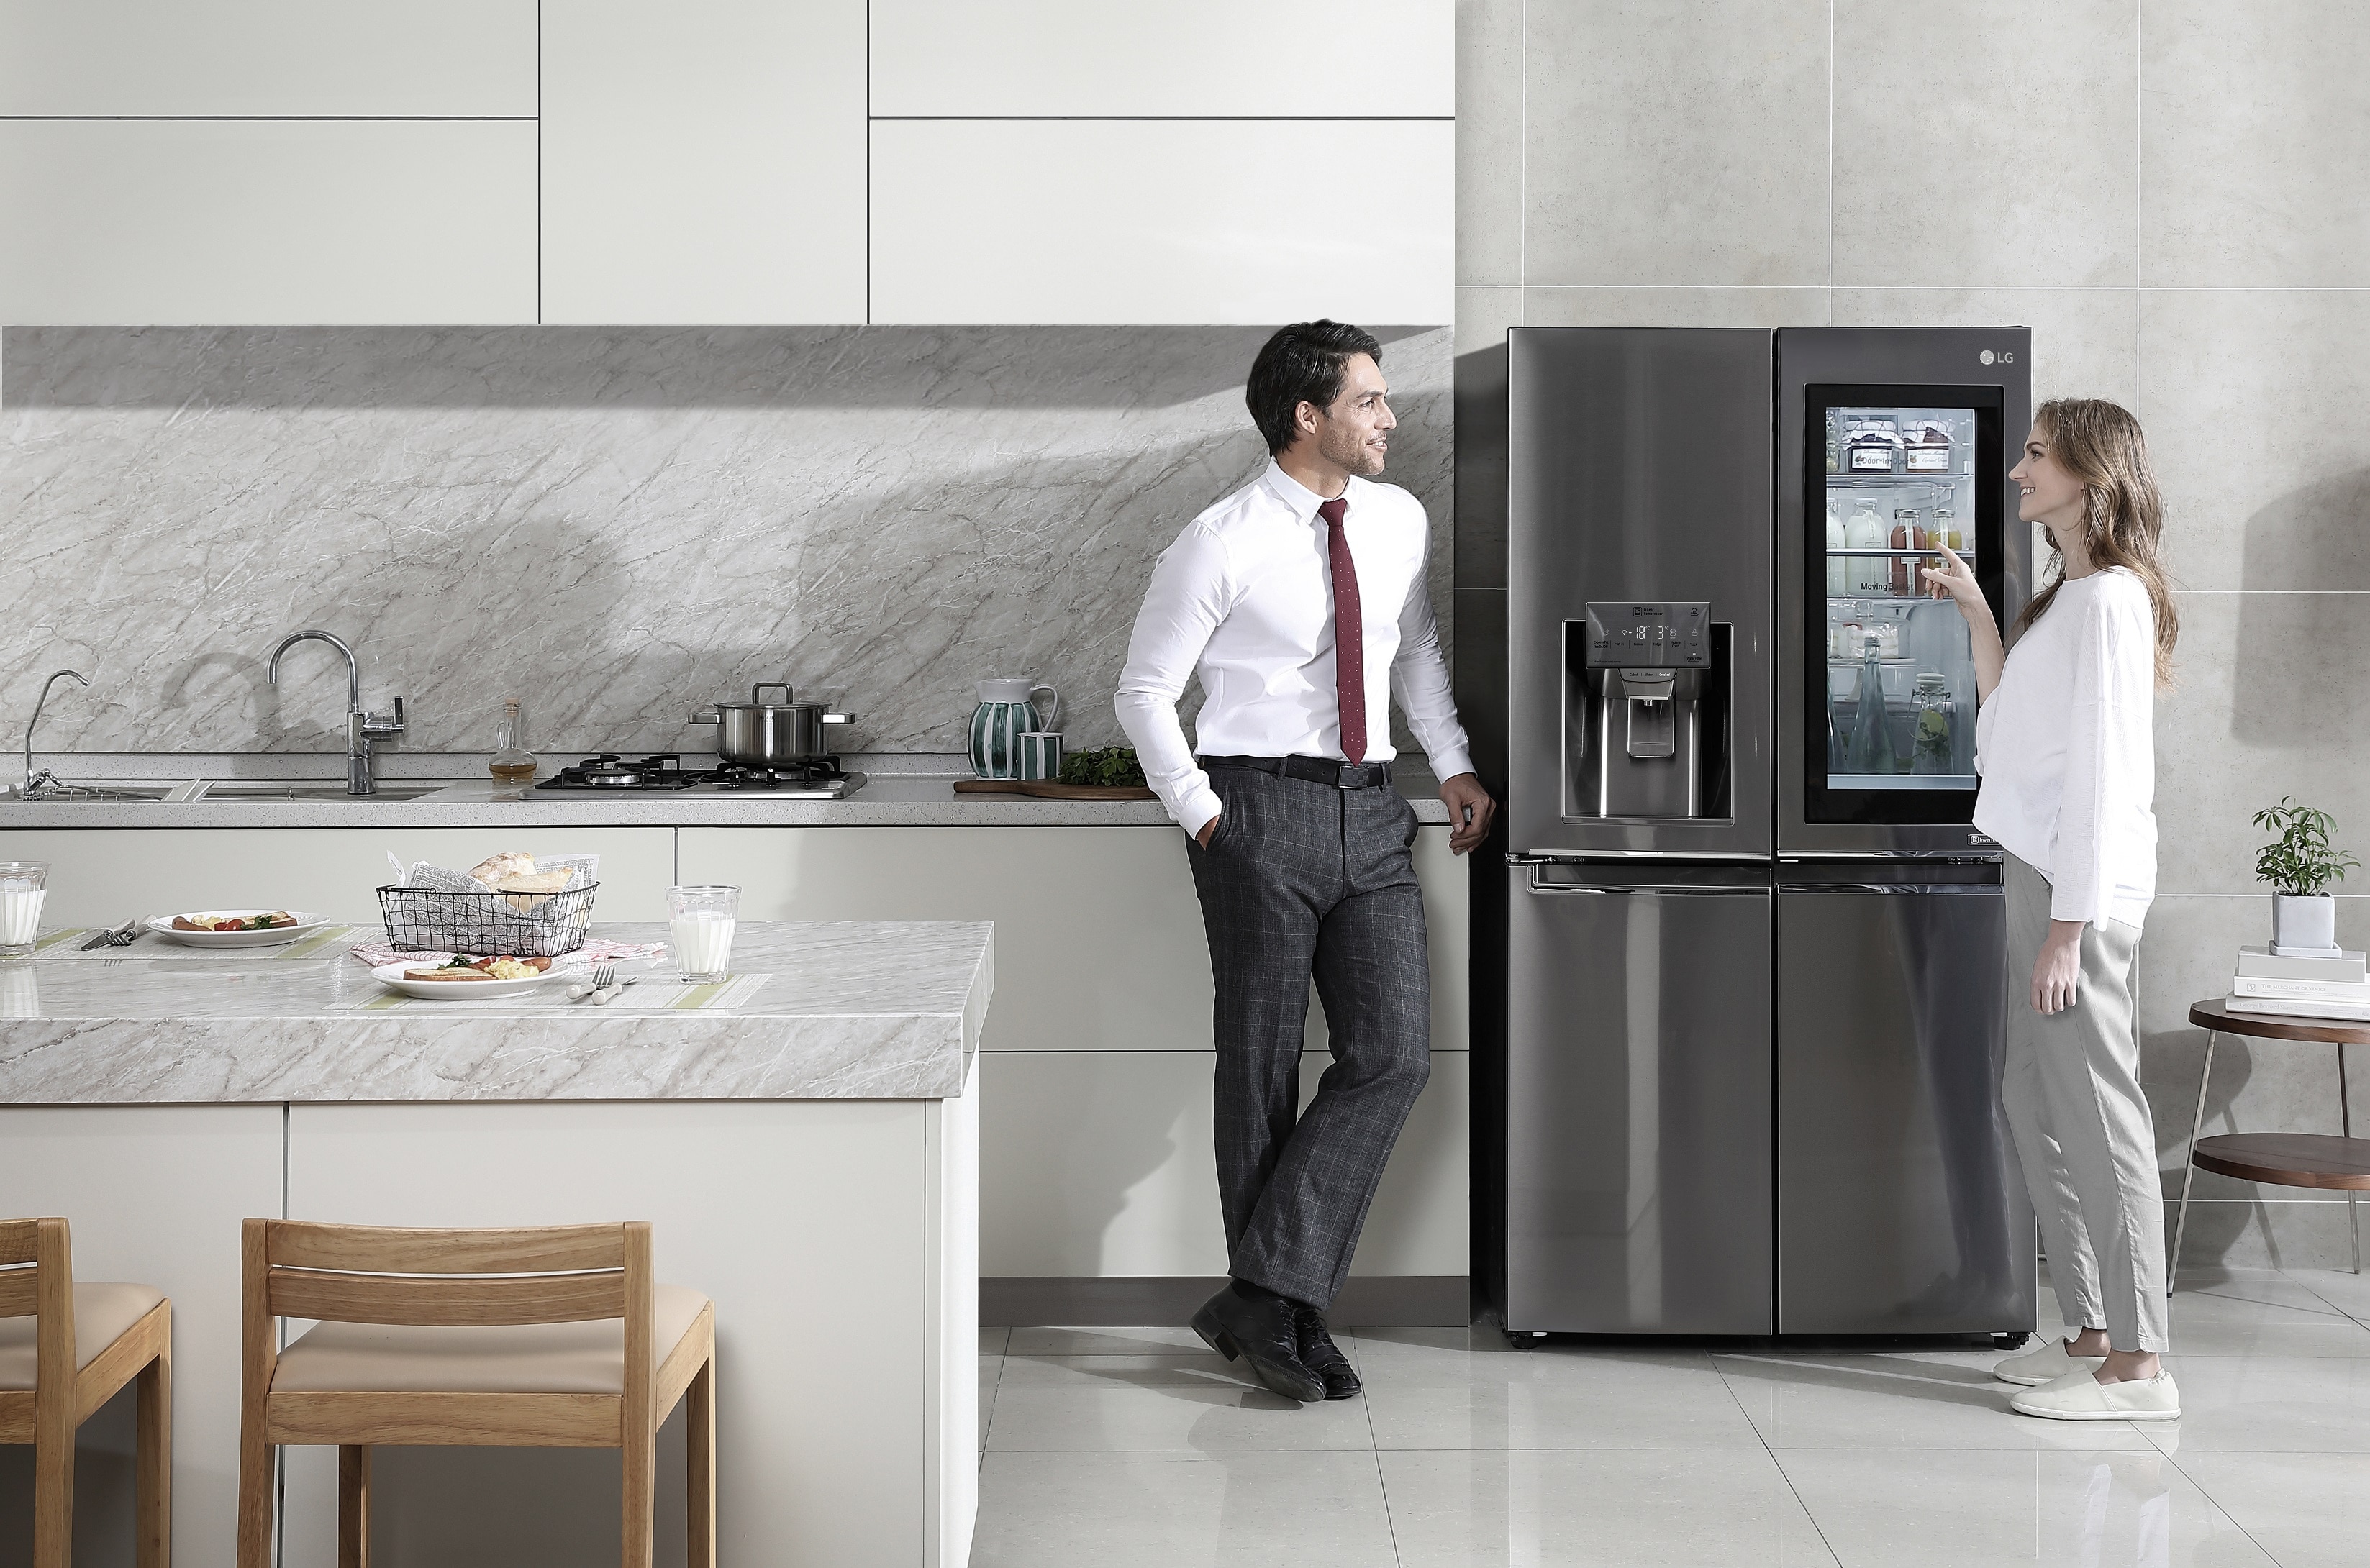 Бытовая техника статьи. Холодильник LG instaview. LG холодильник 2021. LG Smart Fridge. Техника для кухни LG Signature.